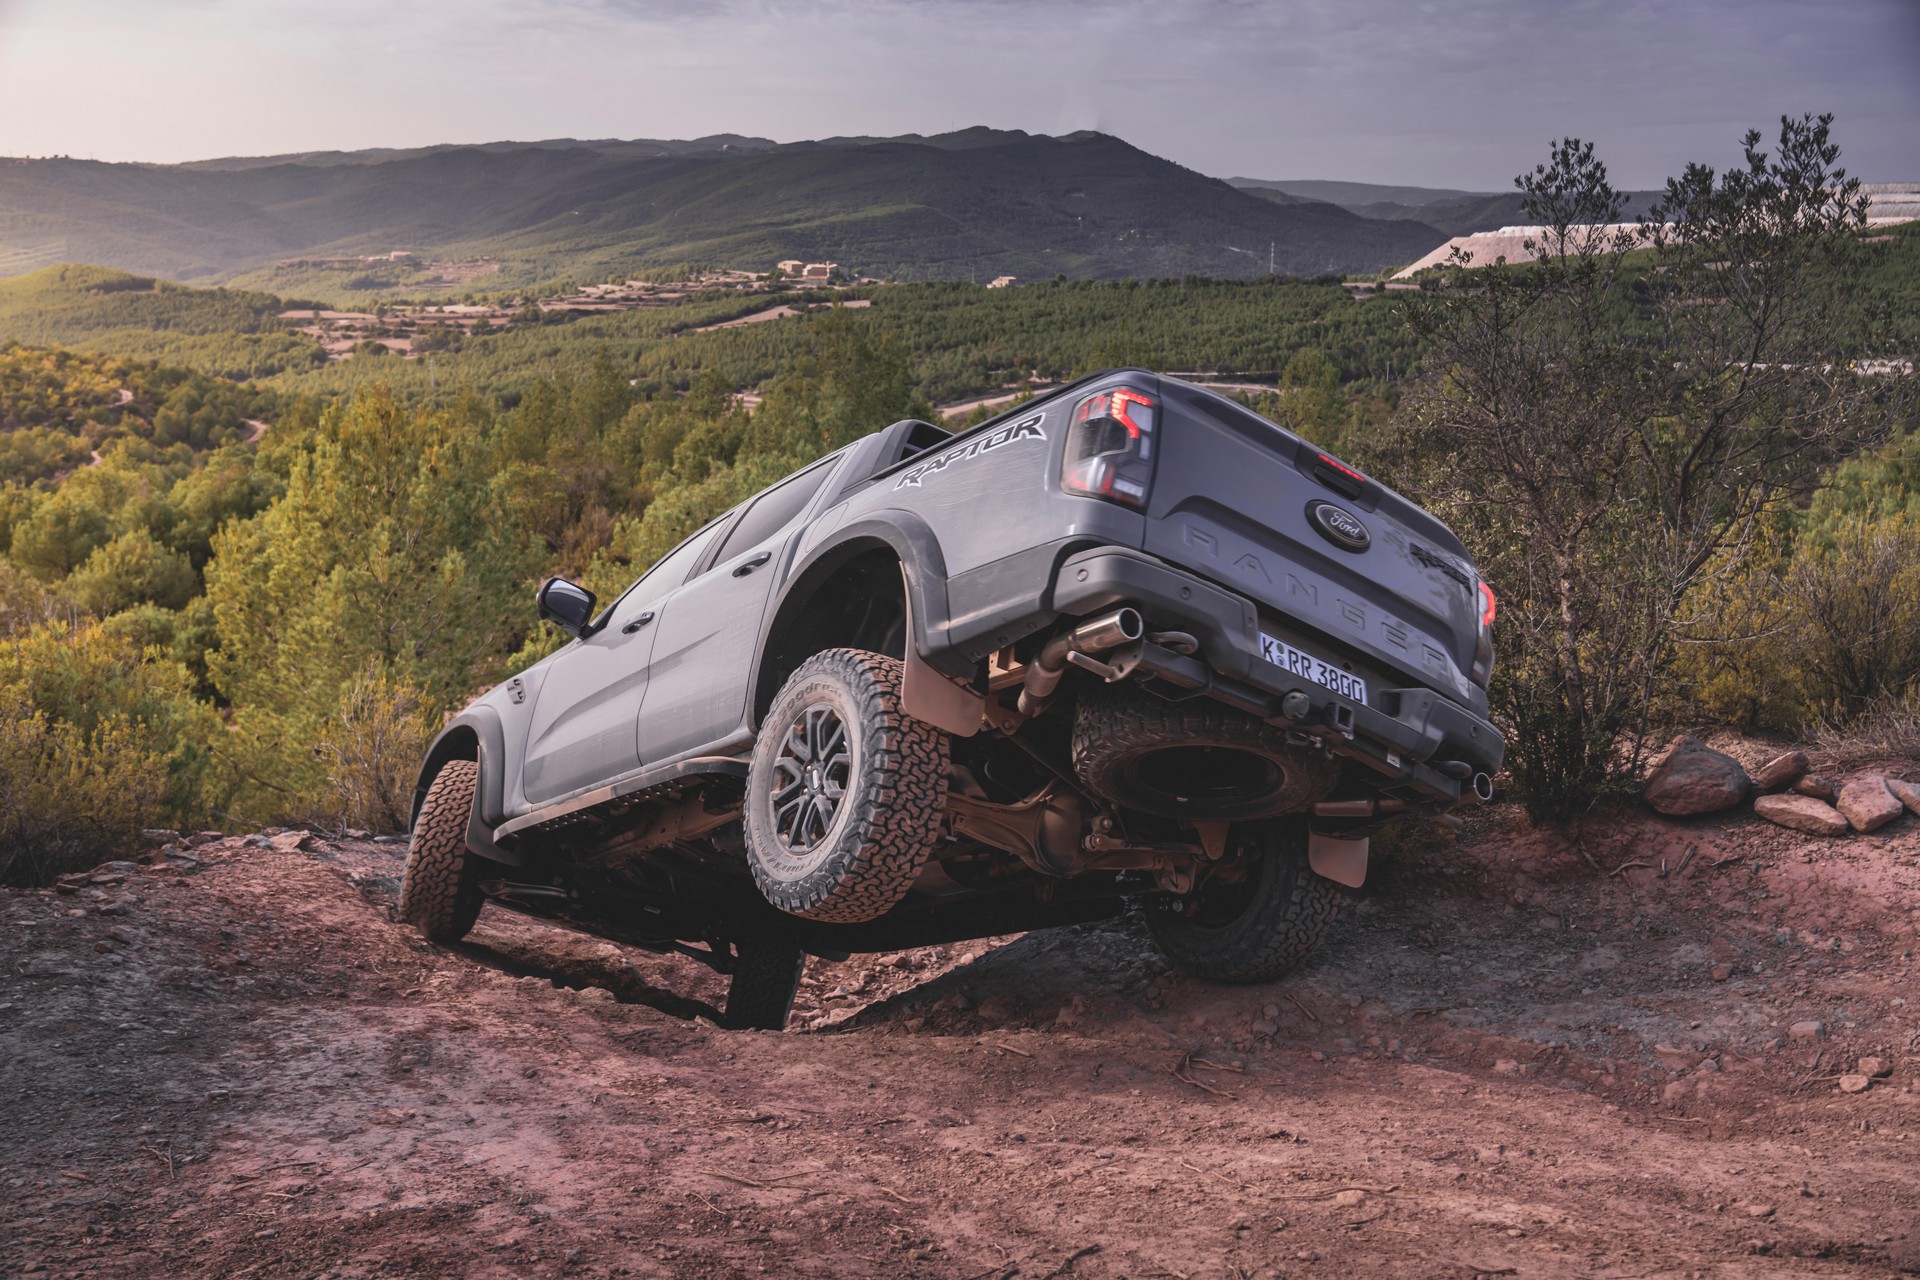 Ford Ranger Raptor cinza vista da diagoanal traseira descendo uma ladeira. O pneu traseiro da esquerda está suspenso.